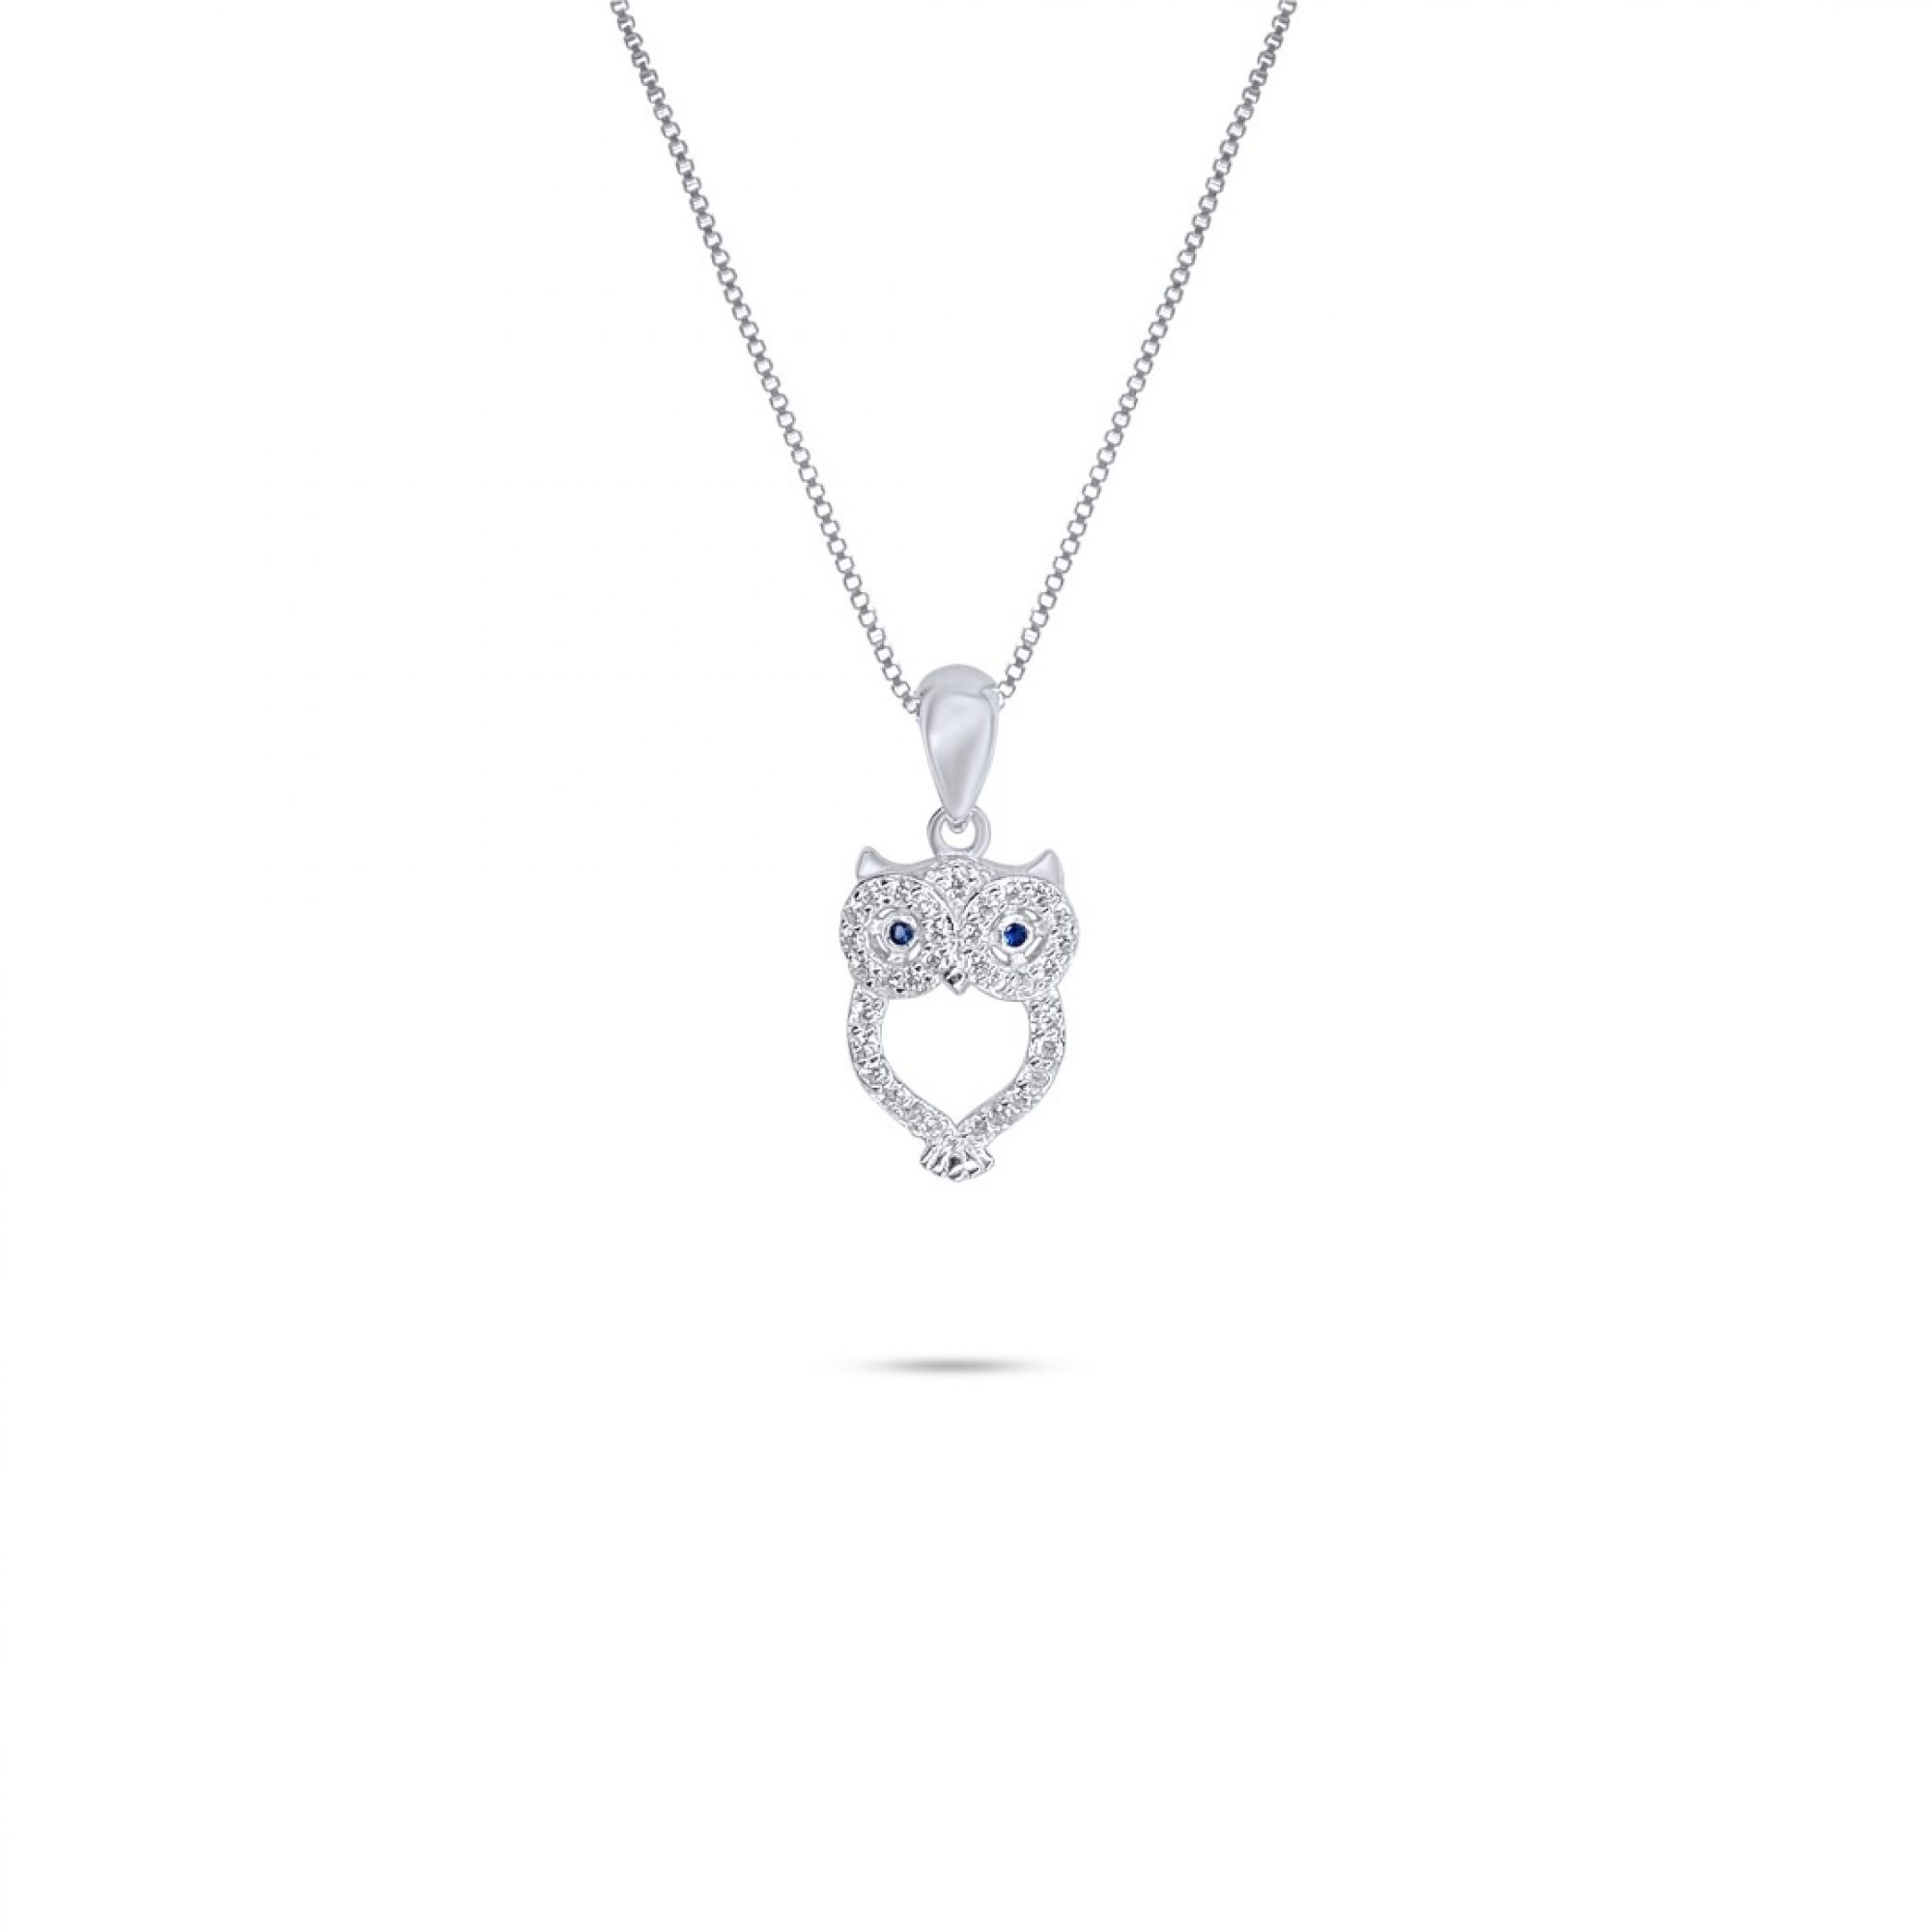 Owl necklace with zircon stones